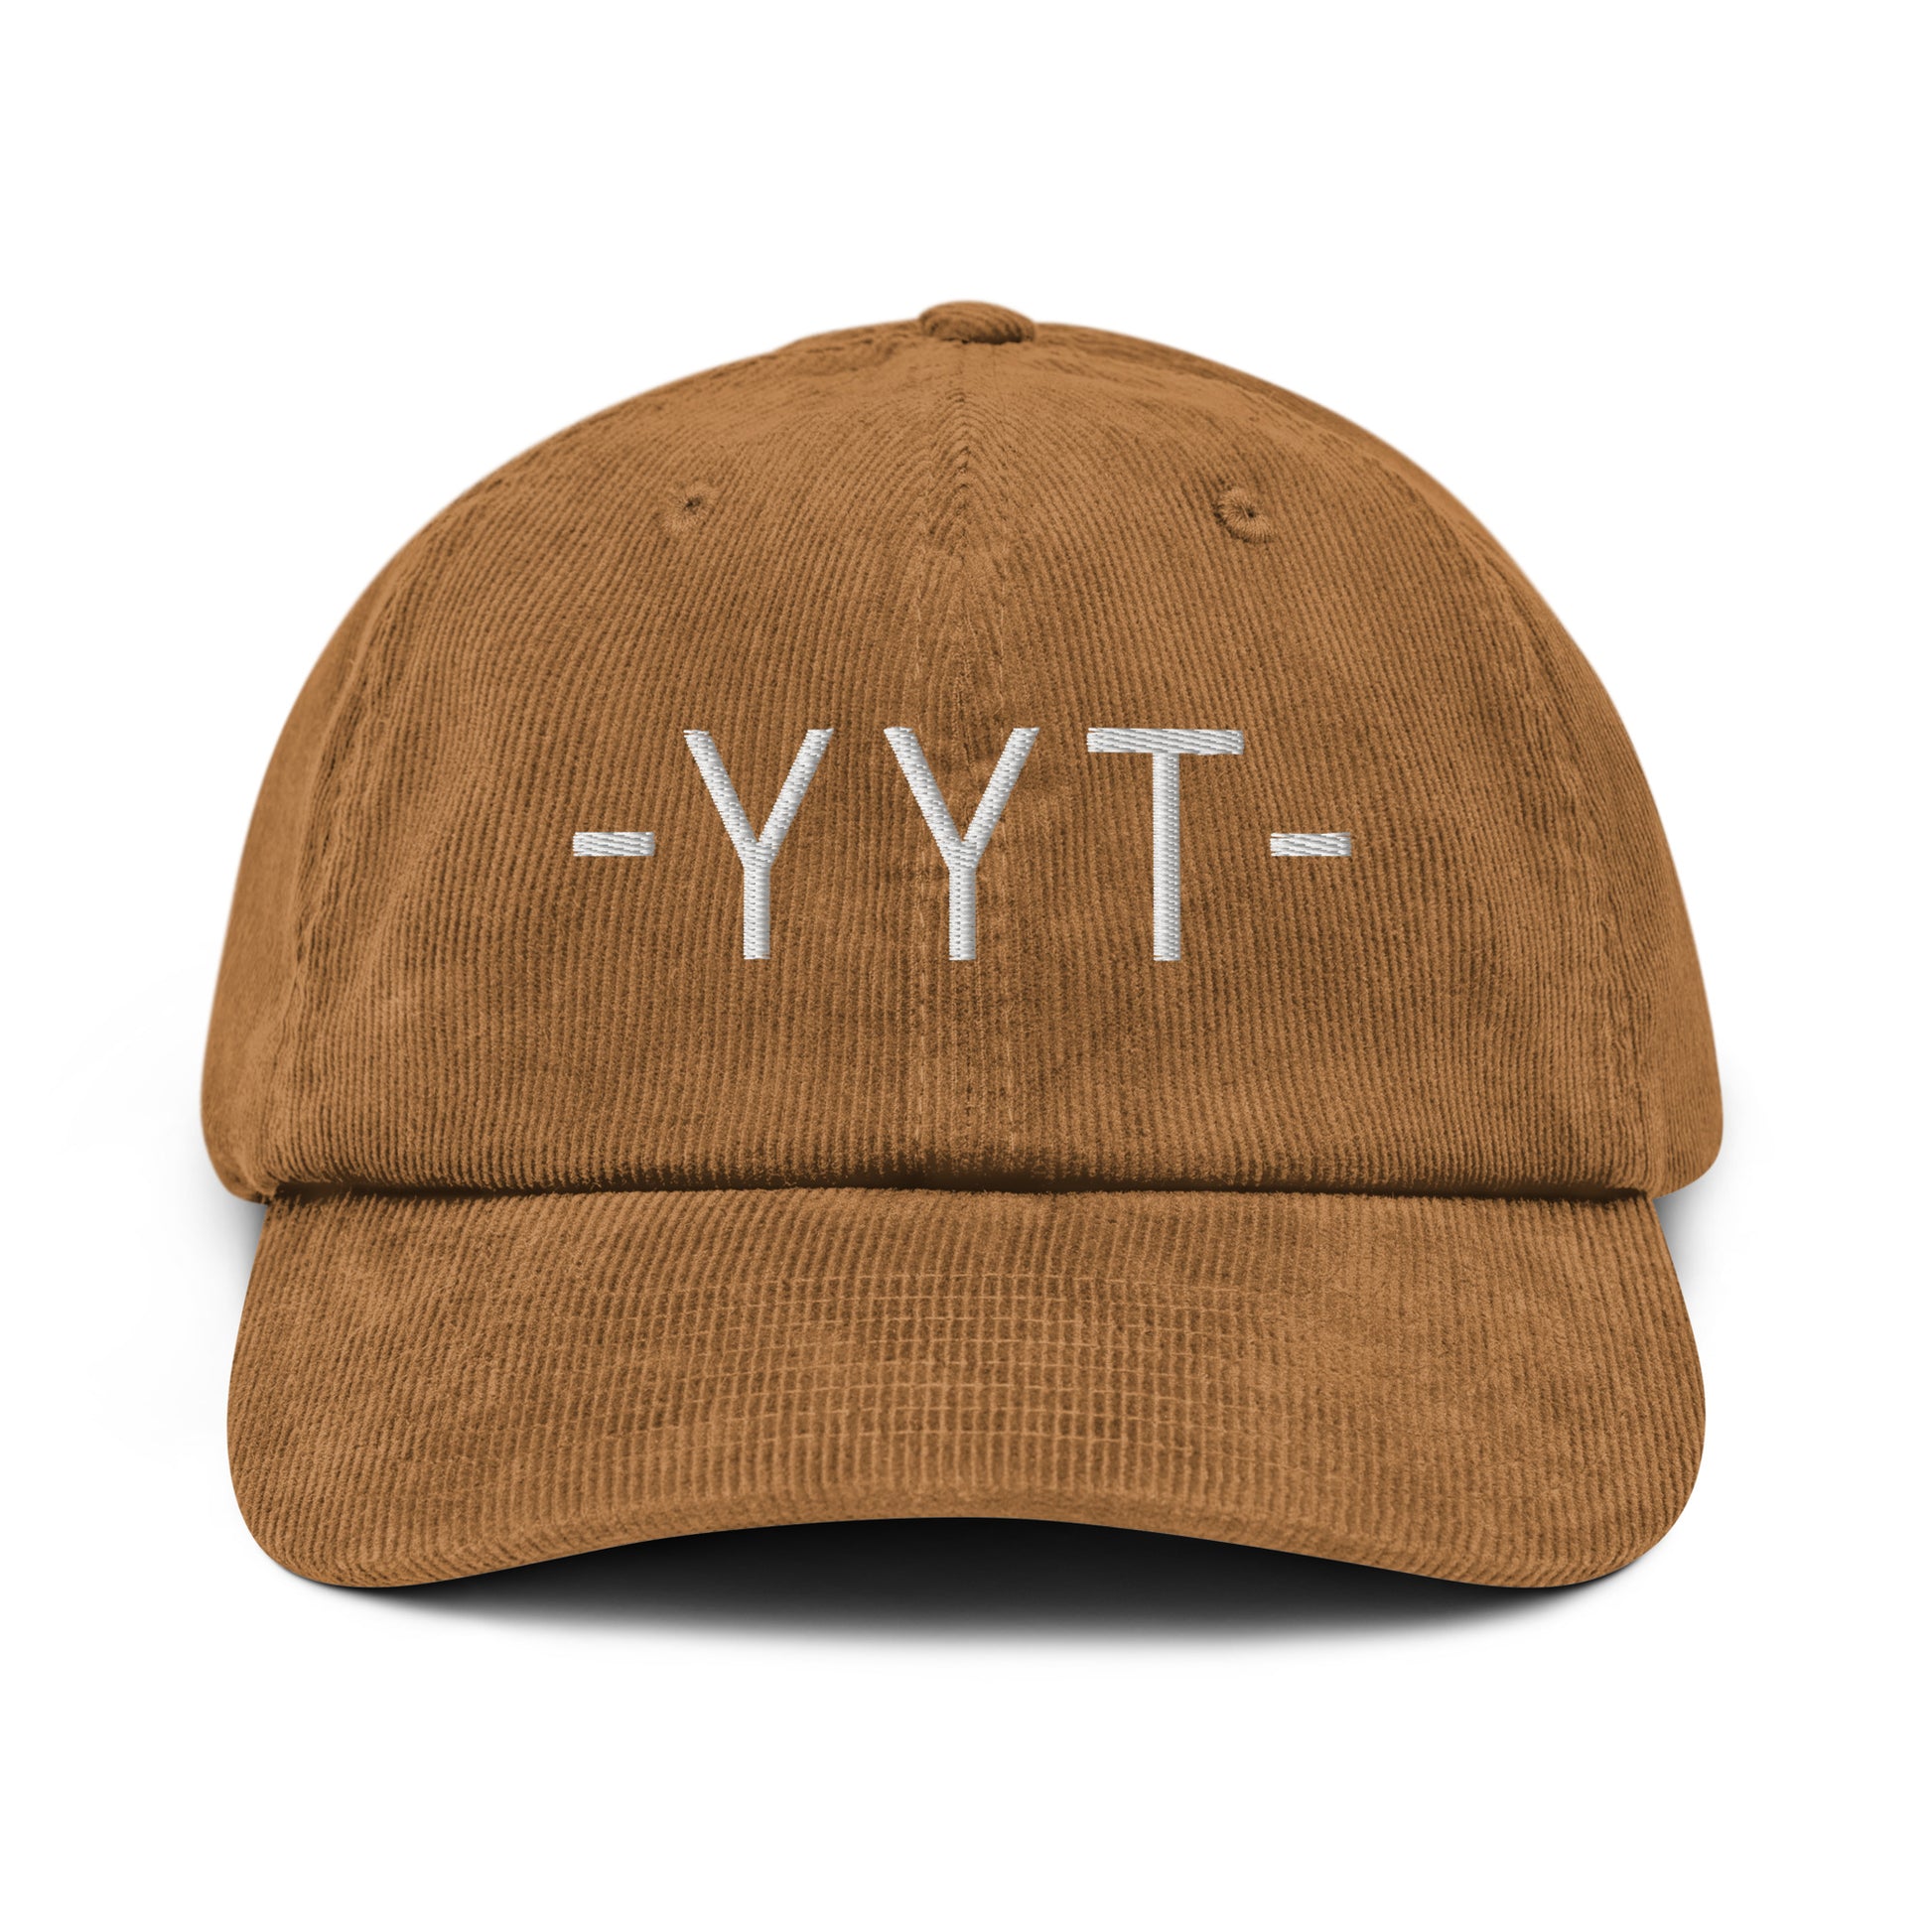 Souvenir Corduroy Hat - White • YYT St. John's • YHM Designs - Image 18